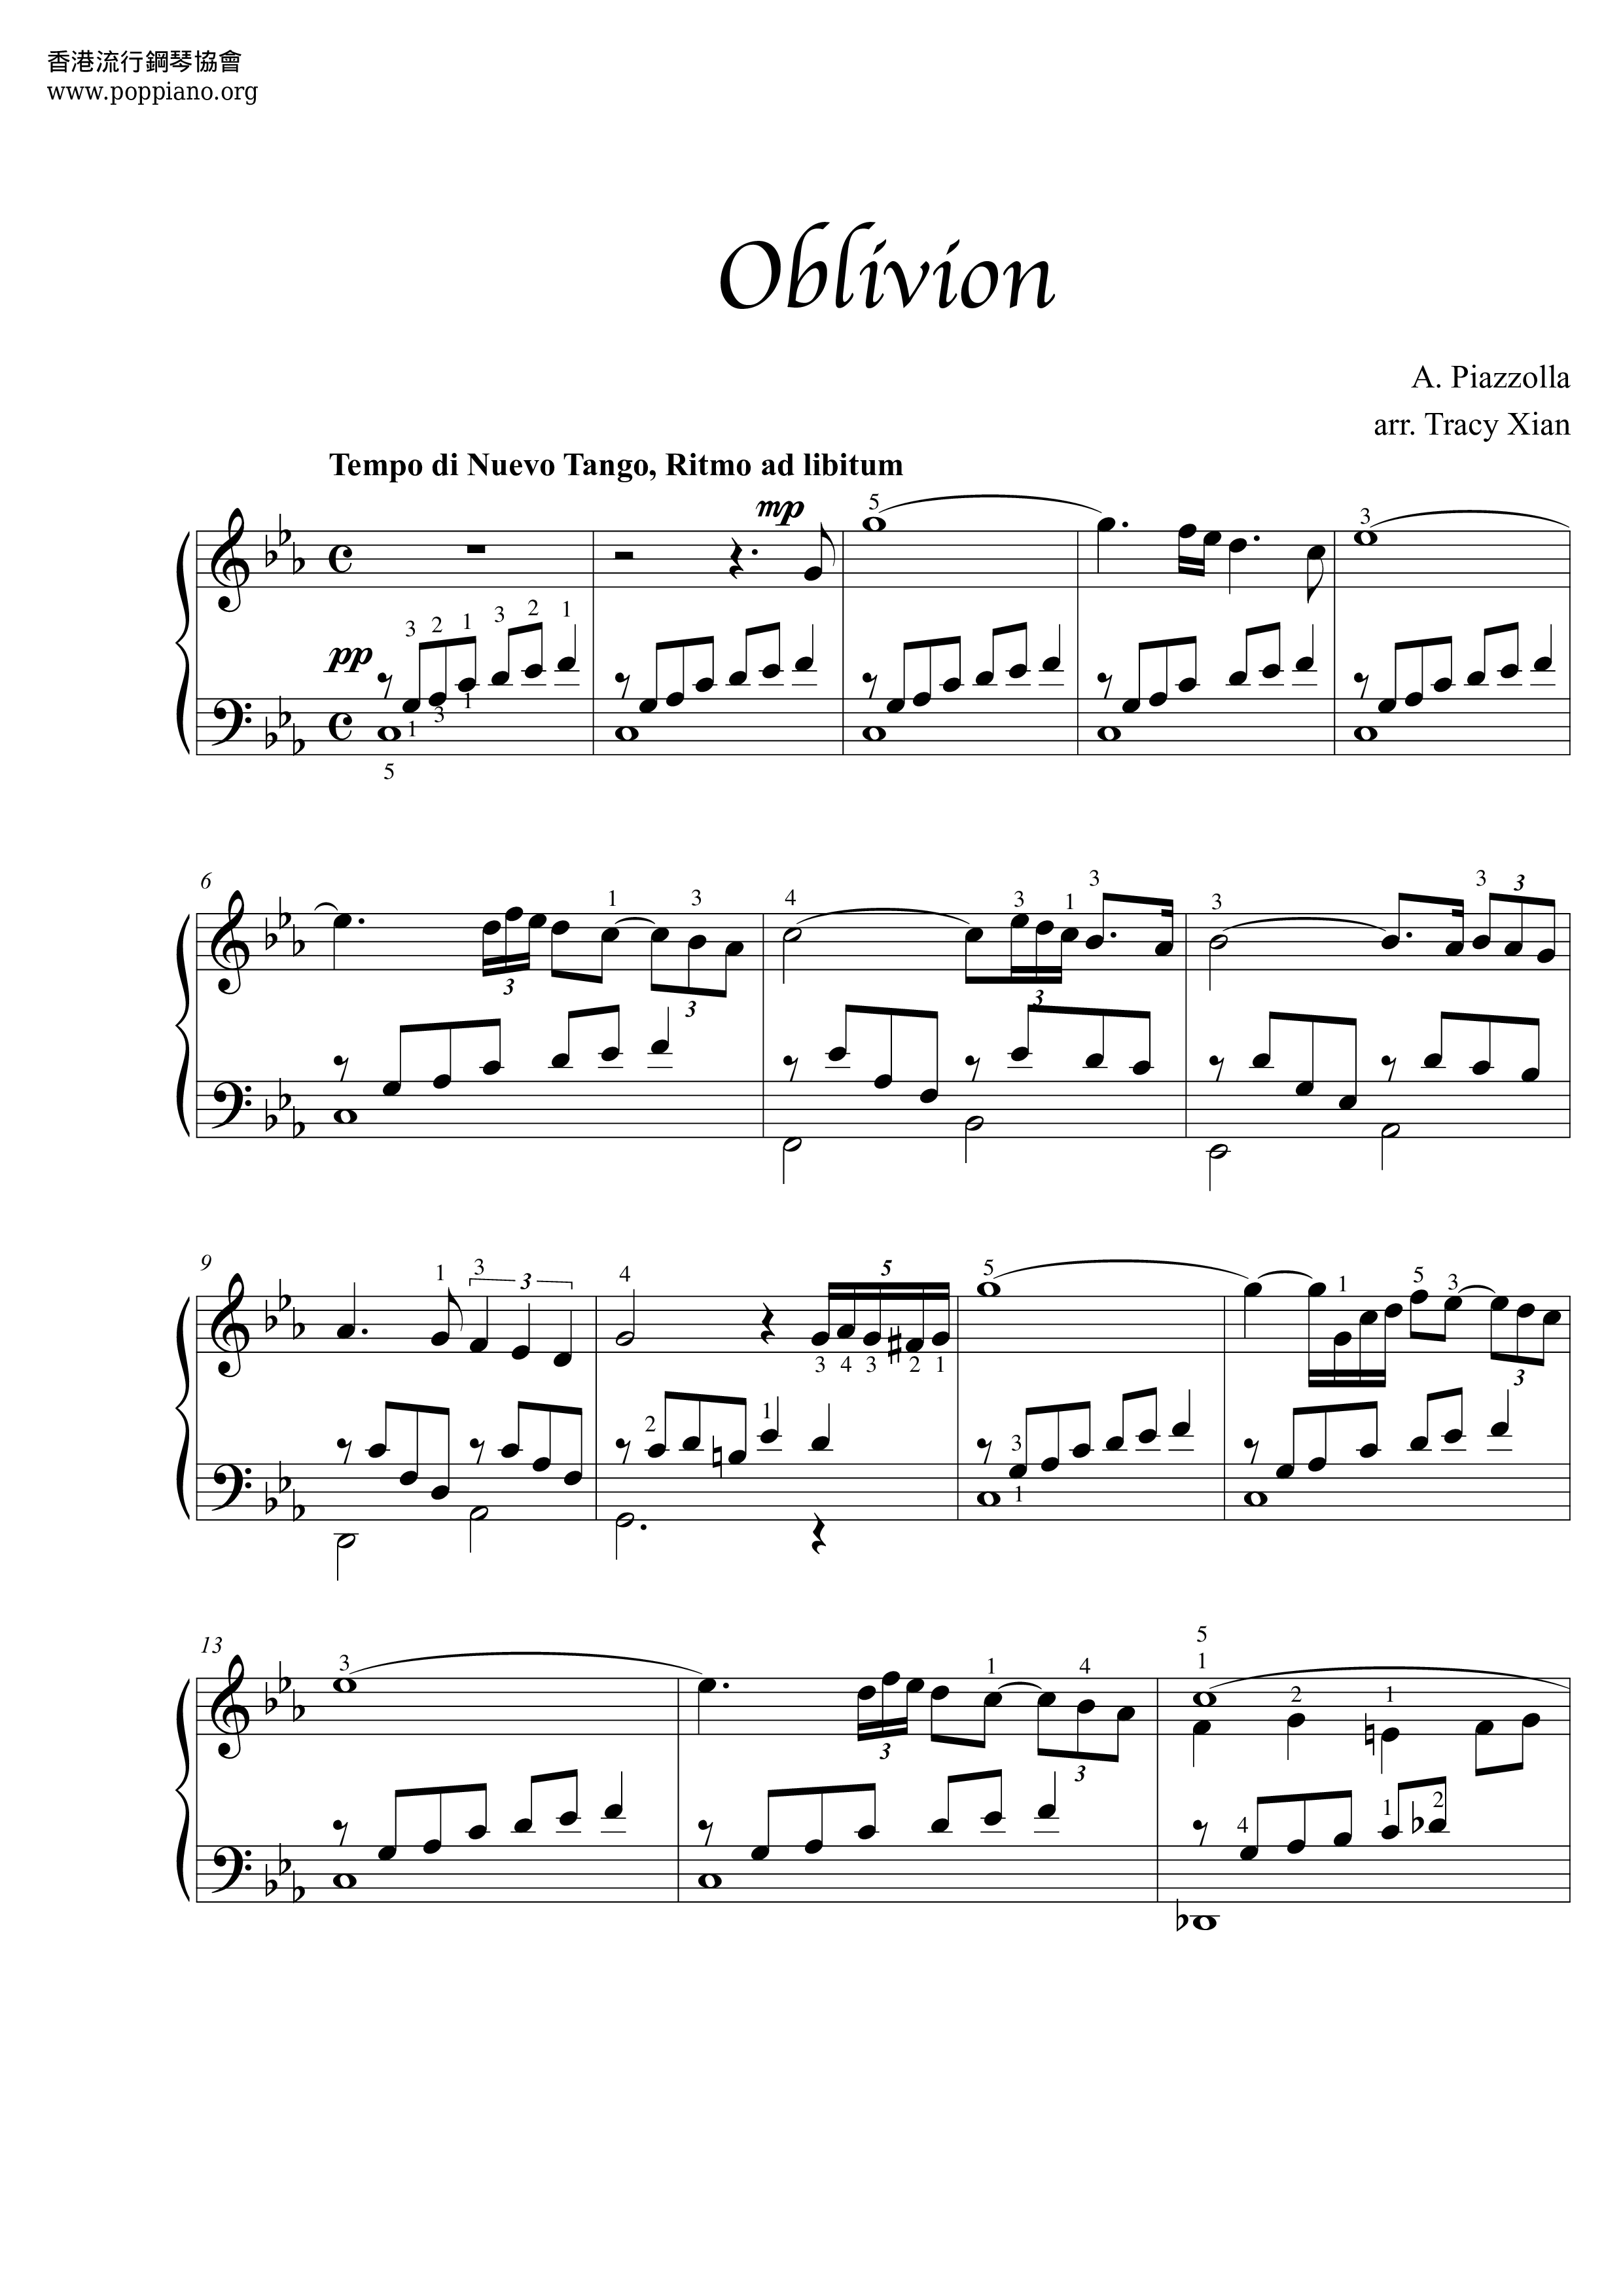 Competencia Ruidoso espacio ☆ Oblivion - Sheet Music / Piano Score Free PDF Download - HK Pop Piano  Academy ☆